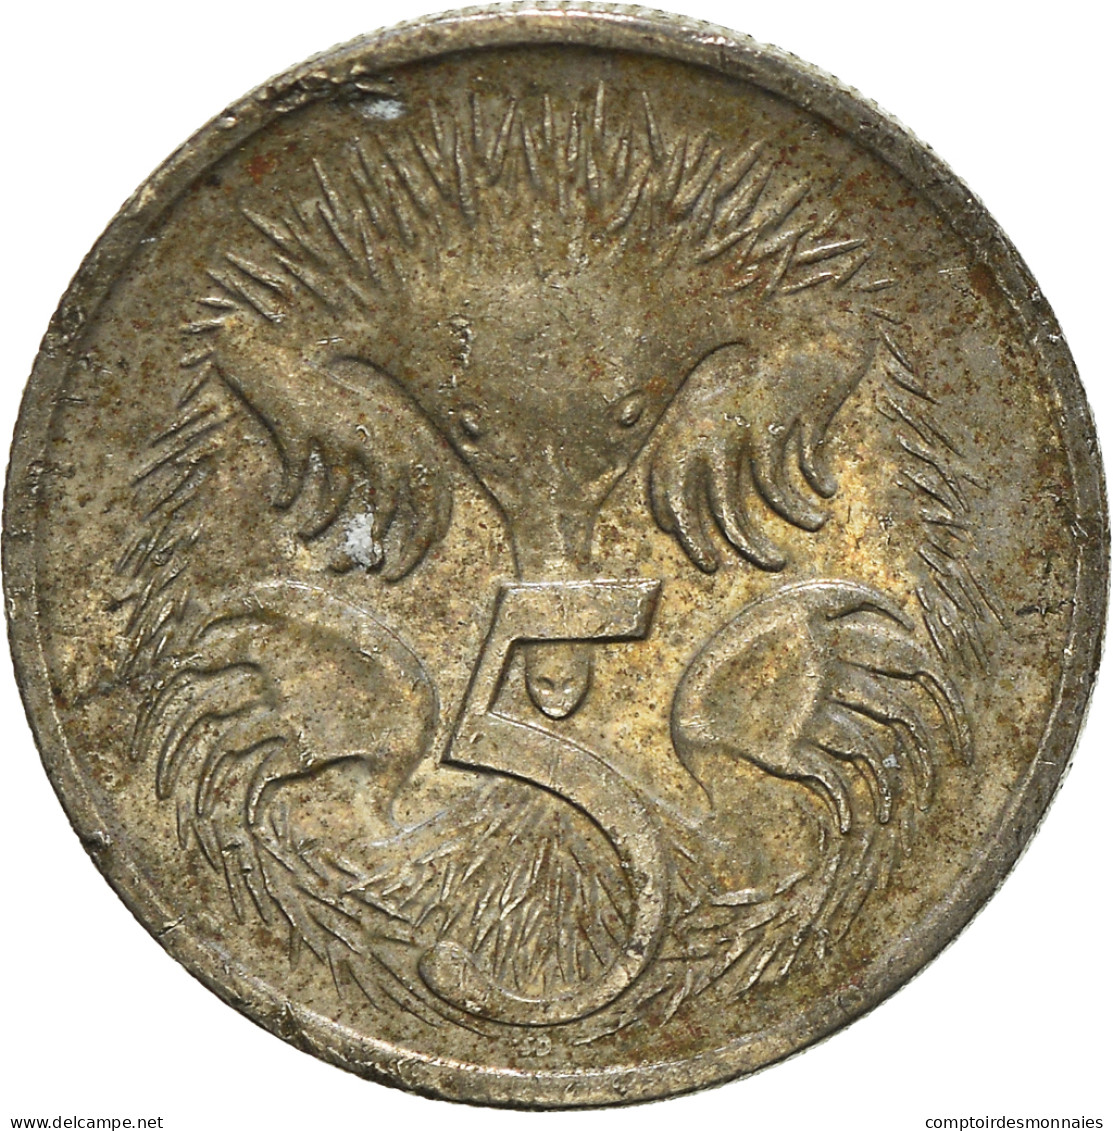 Monnaie, 5 Cents, 2007 - Victoria